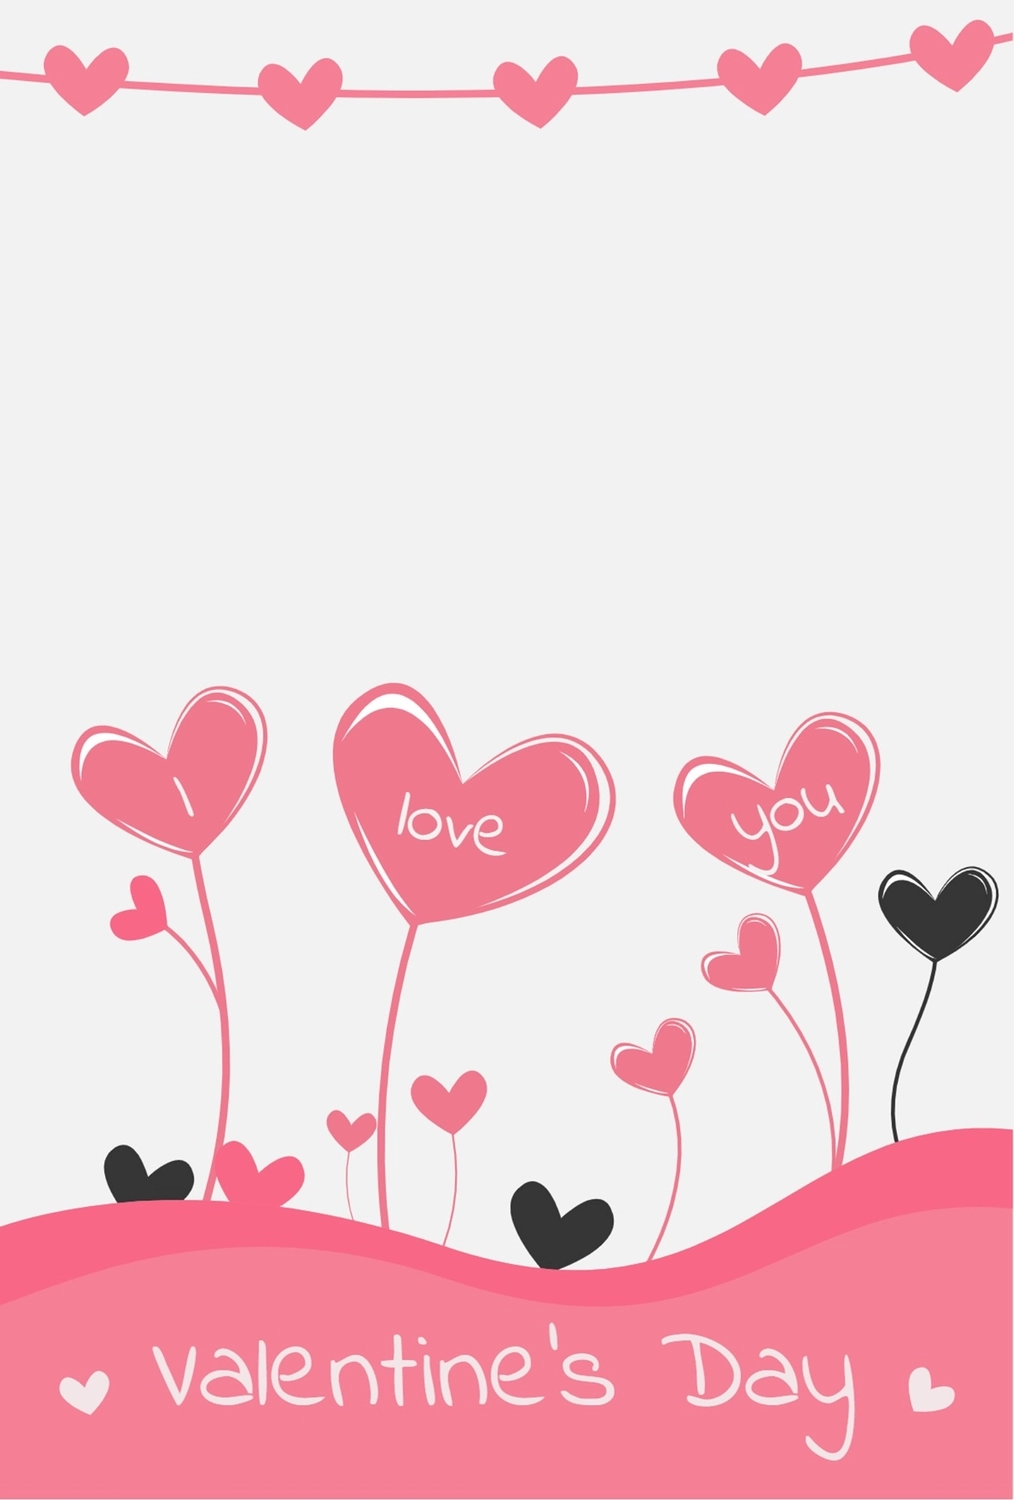 バレンタインデーグリーティングカード　ハートの花, ハート, 作成, デザイン, メッセージカードテンプレート